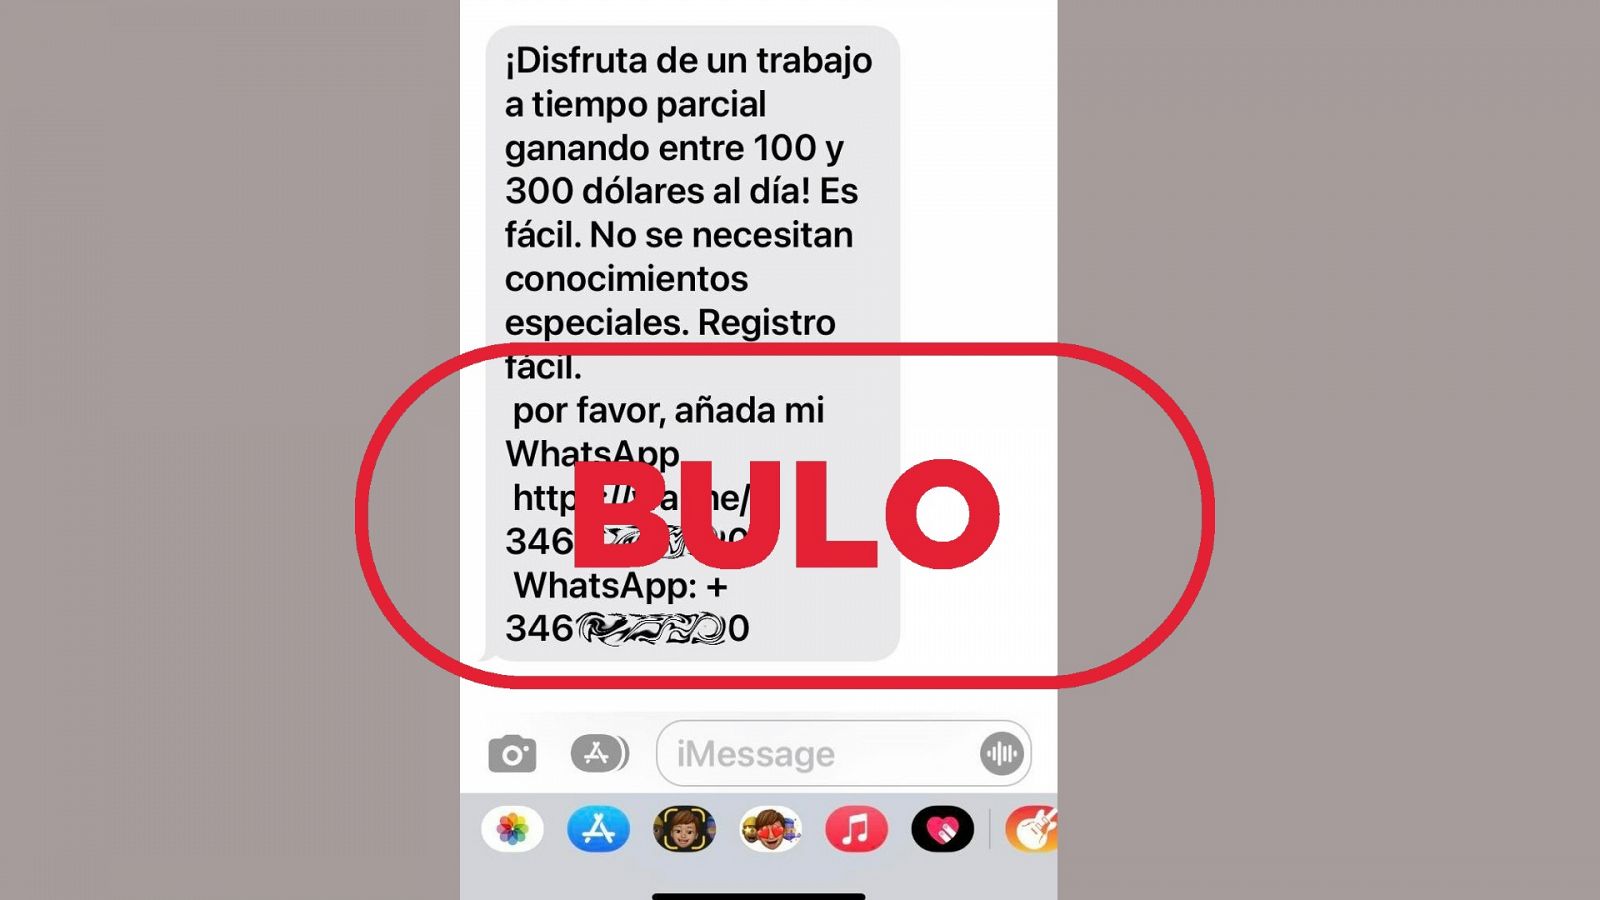 Imagen del mensaje de móvil SMS que presenta una falsa oferta laboral para robar datos personales, con el sello bulo en rojo de VerificaRTVE